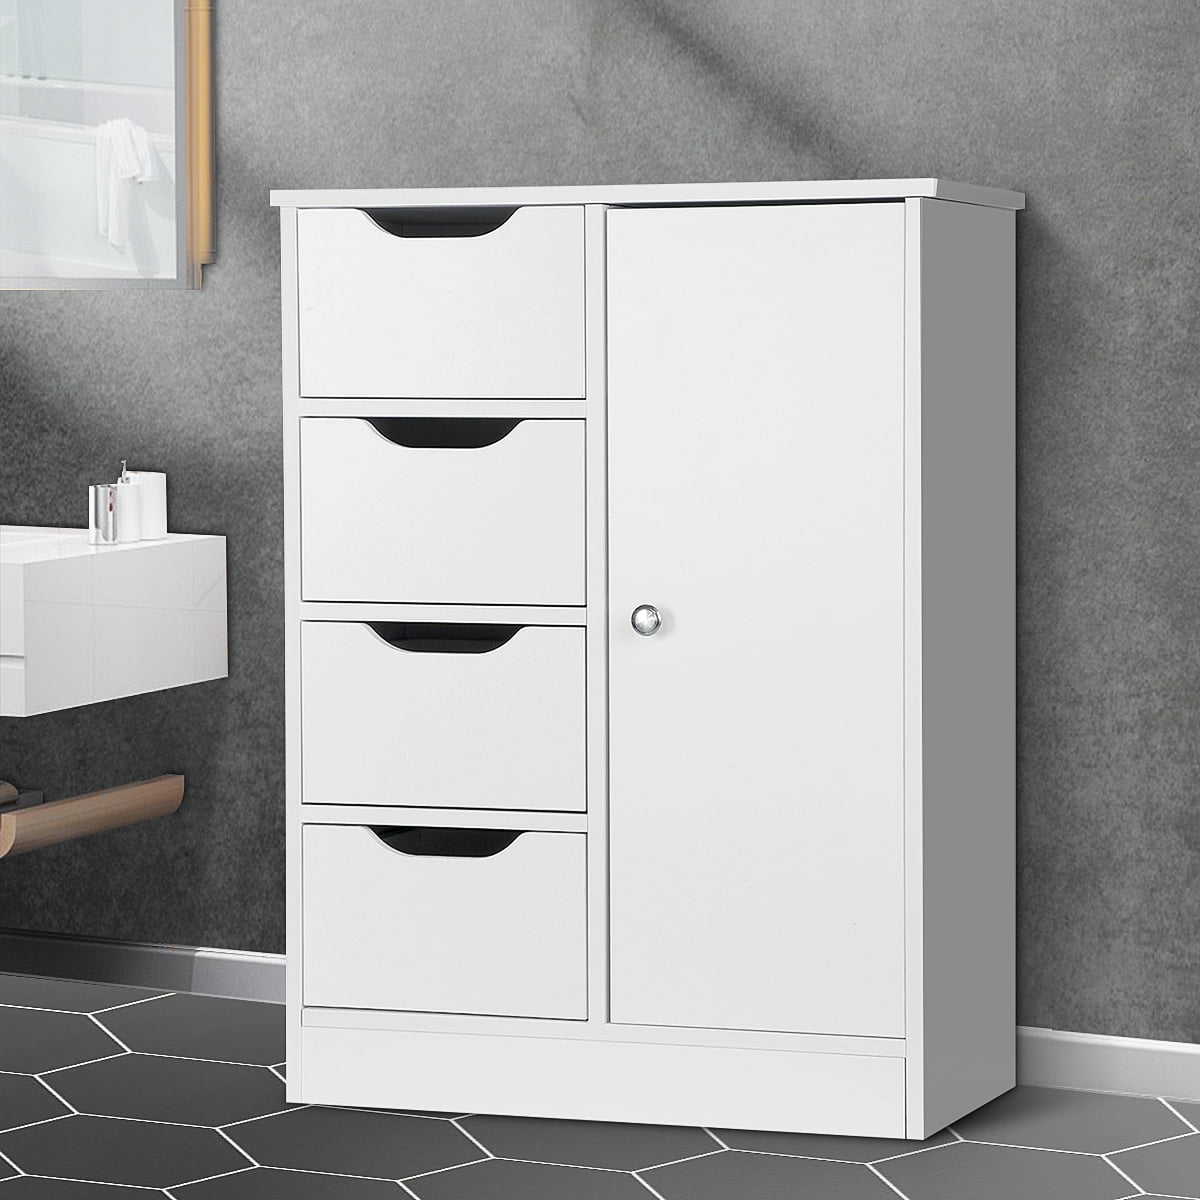 Bathroom Floor Cabinet Wooden Free Standing Storage Organizer w 4 Drawers White 